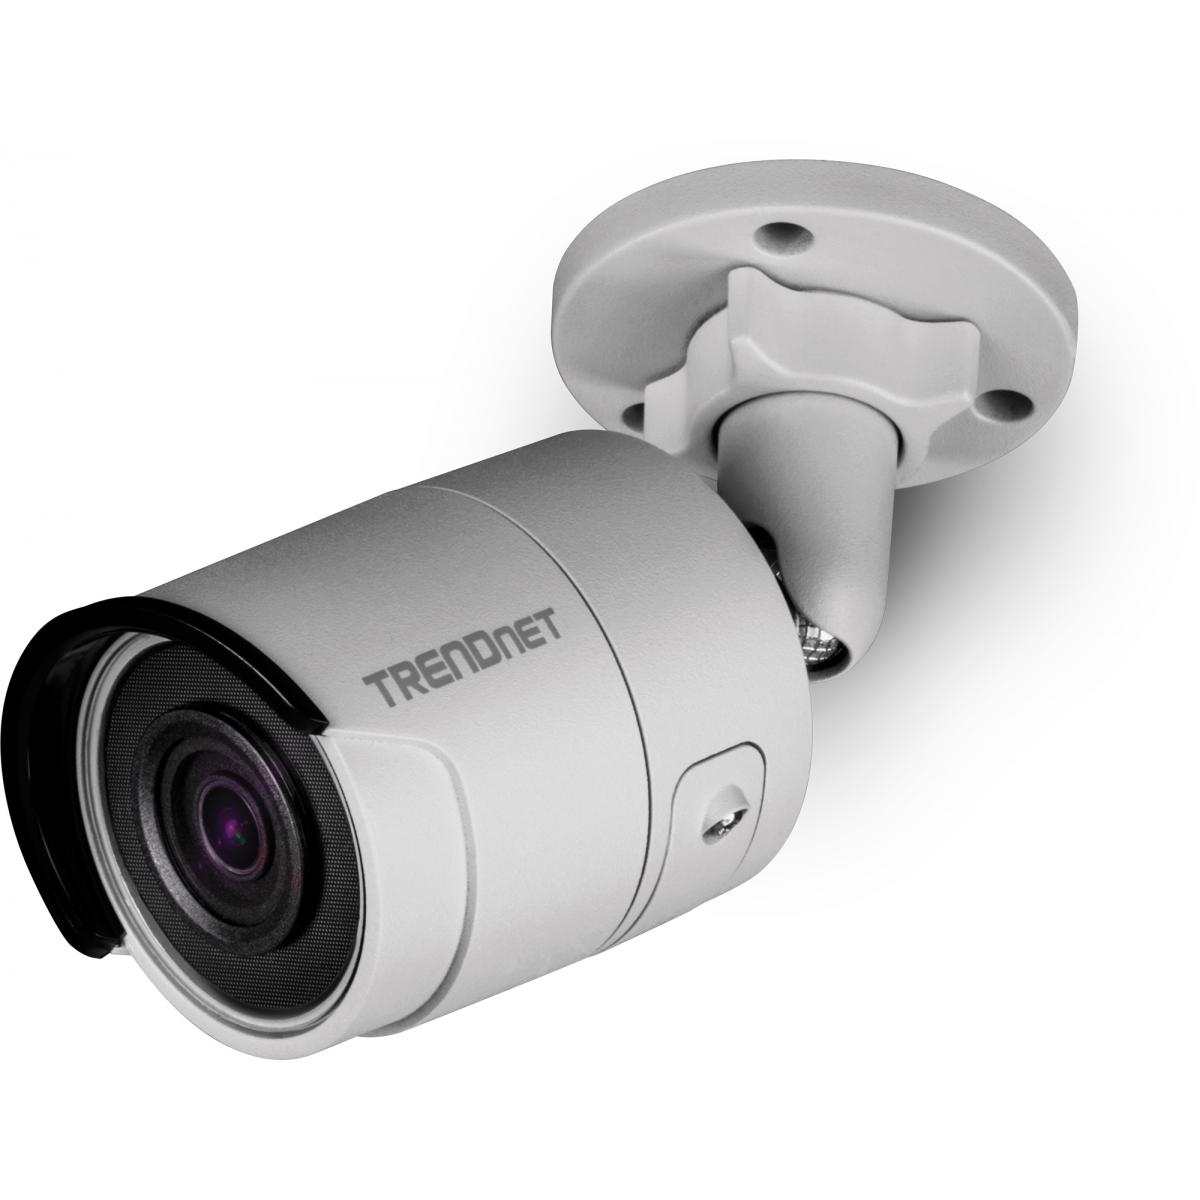 Trendnet - TRENDNET TV-IP318PI - Caméra de surveillance connectée